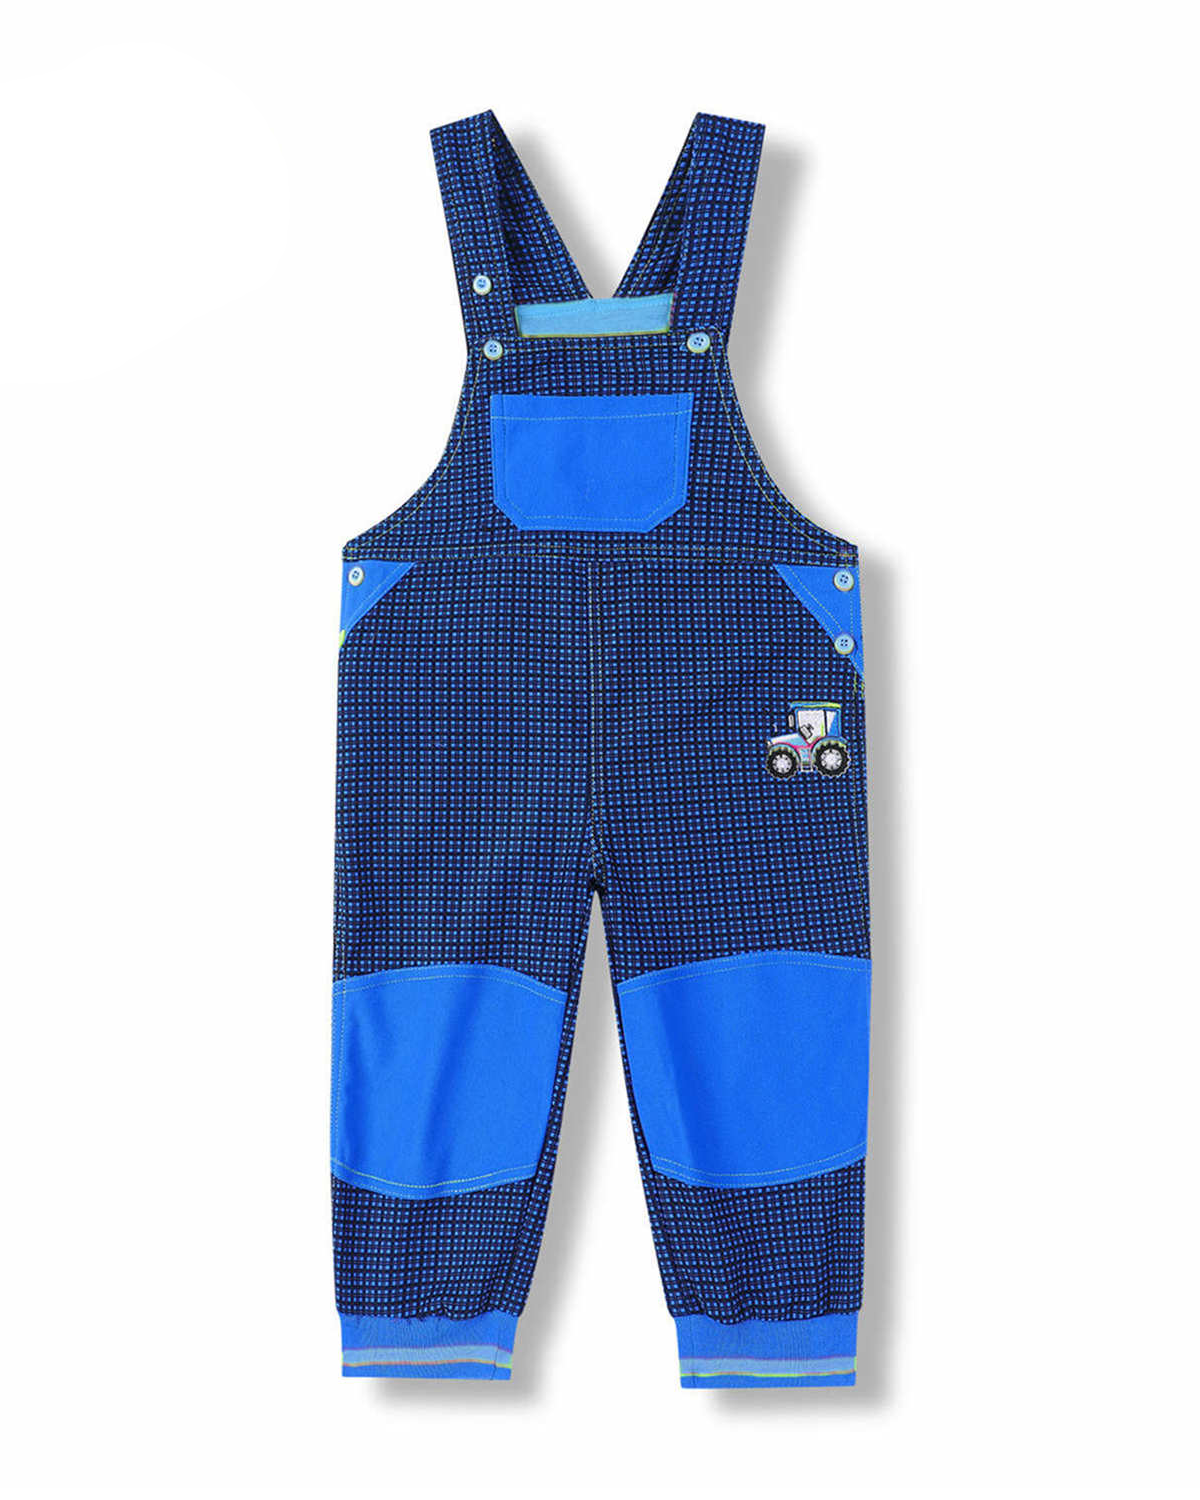 Chapecké laclové outdoorové kalhoty - KUGO G8557, modrá / modré knoflíky Barva: Modrá, Velikost: 74